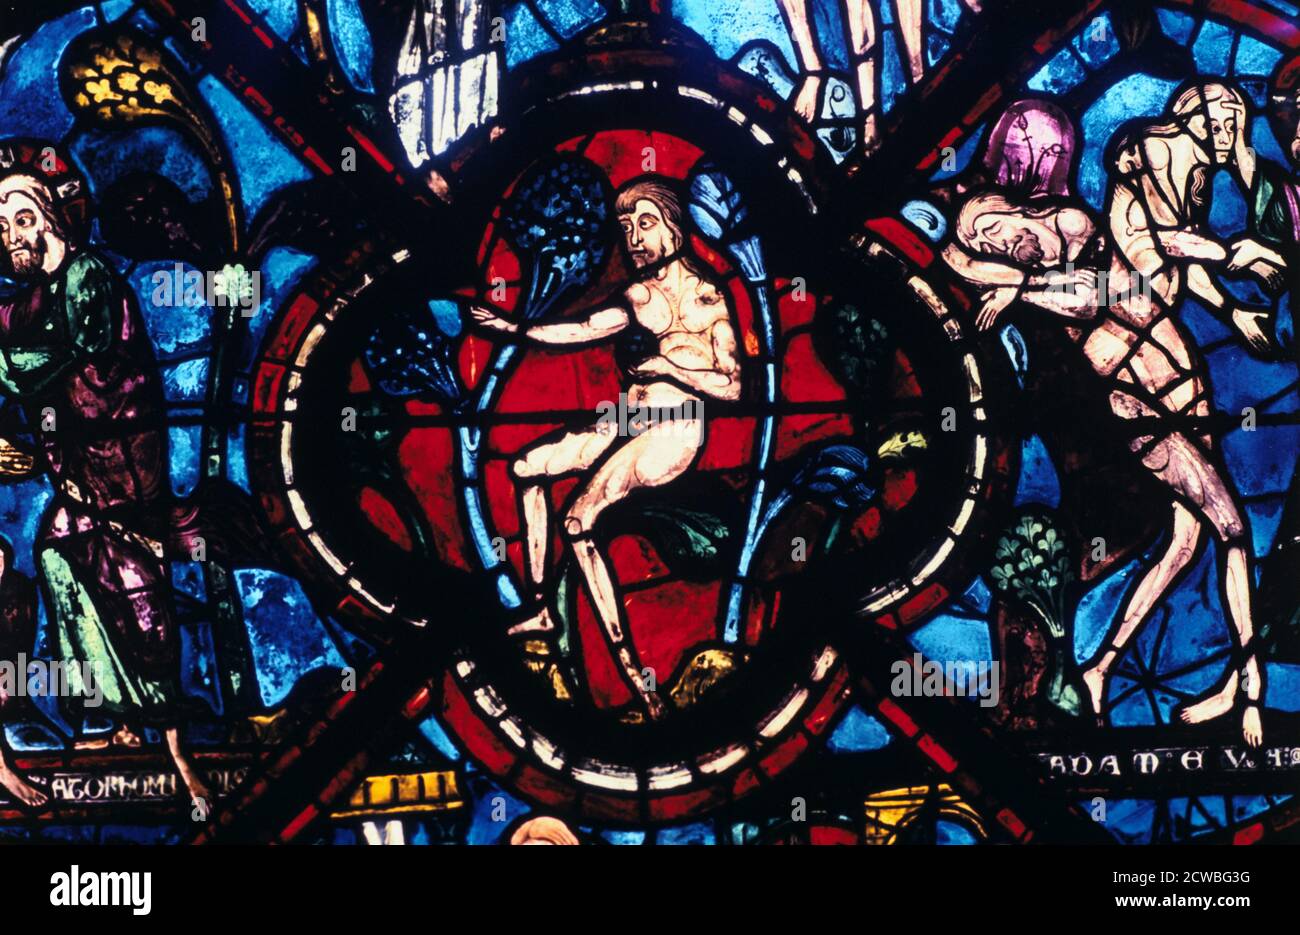 Adam dans l'Eden, vitrail, Cathédrale de Chartres, France, 1205-1215. À partir de détails le Bon Samaritain et Adam et Eve dans la fenêtre côté sud. Banque D'Images